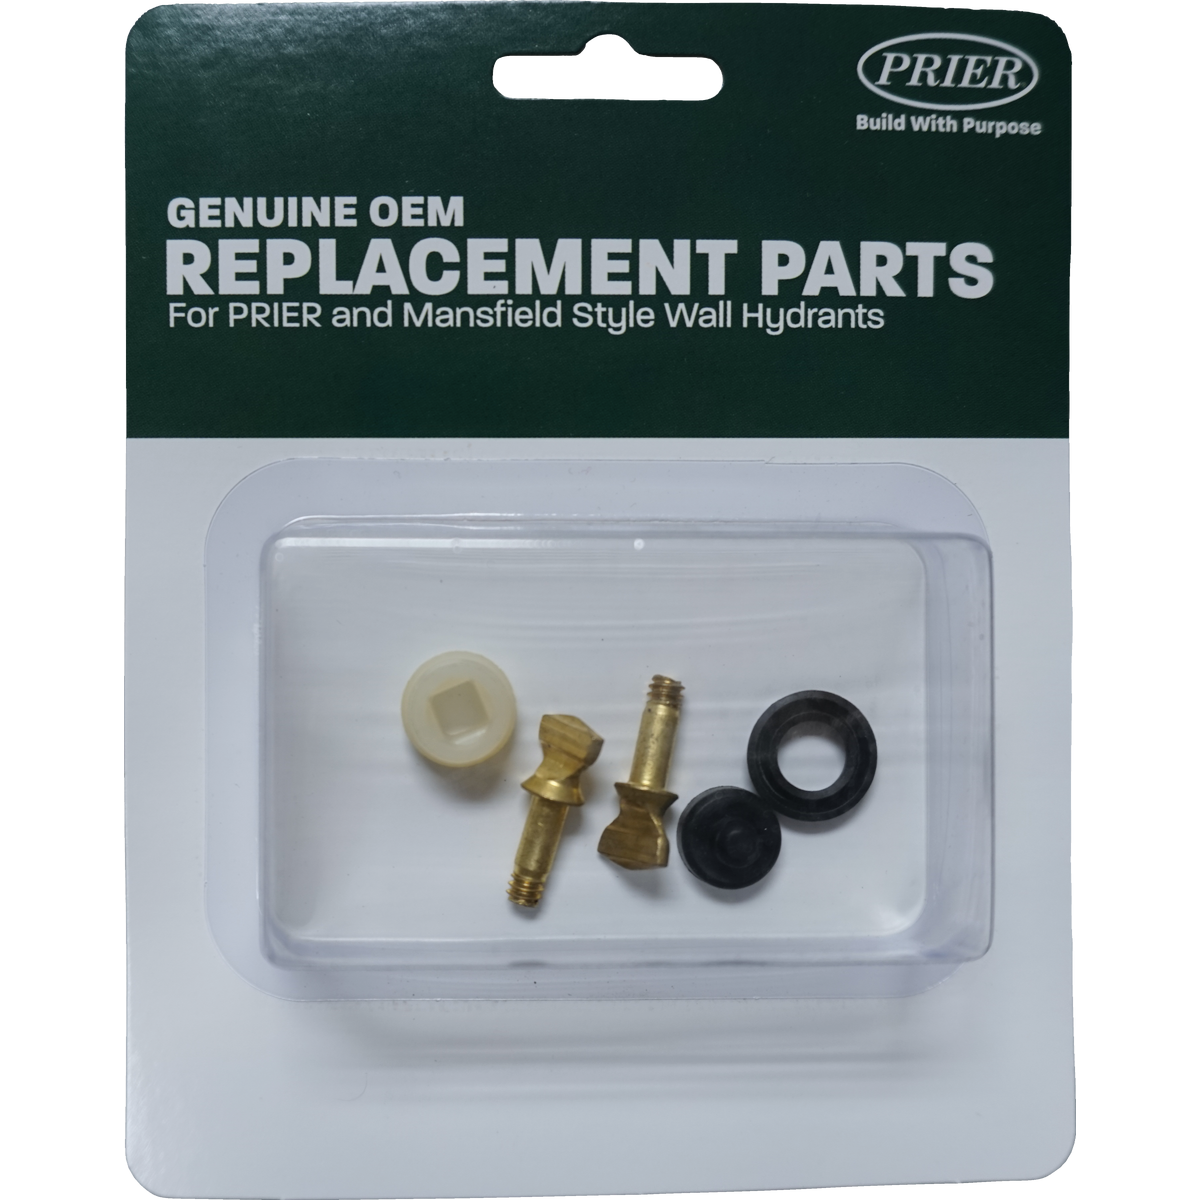 Ballcock Repair Kit & Parts